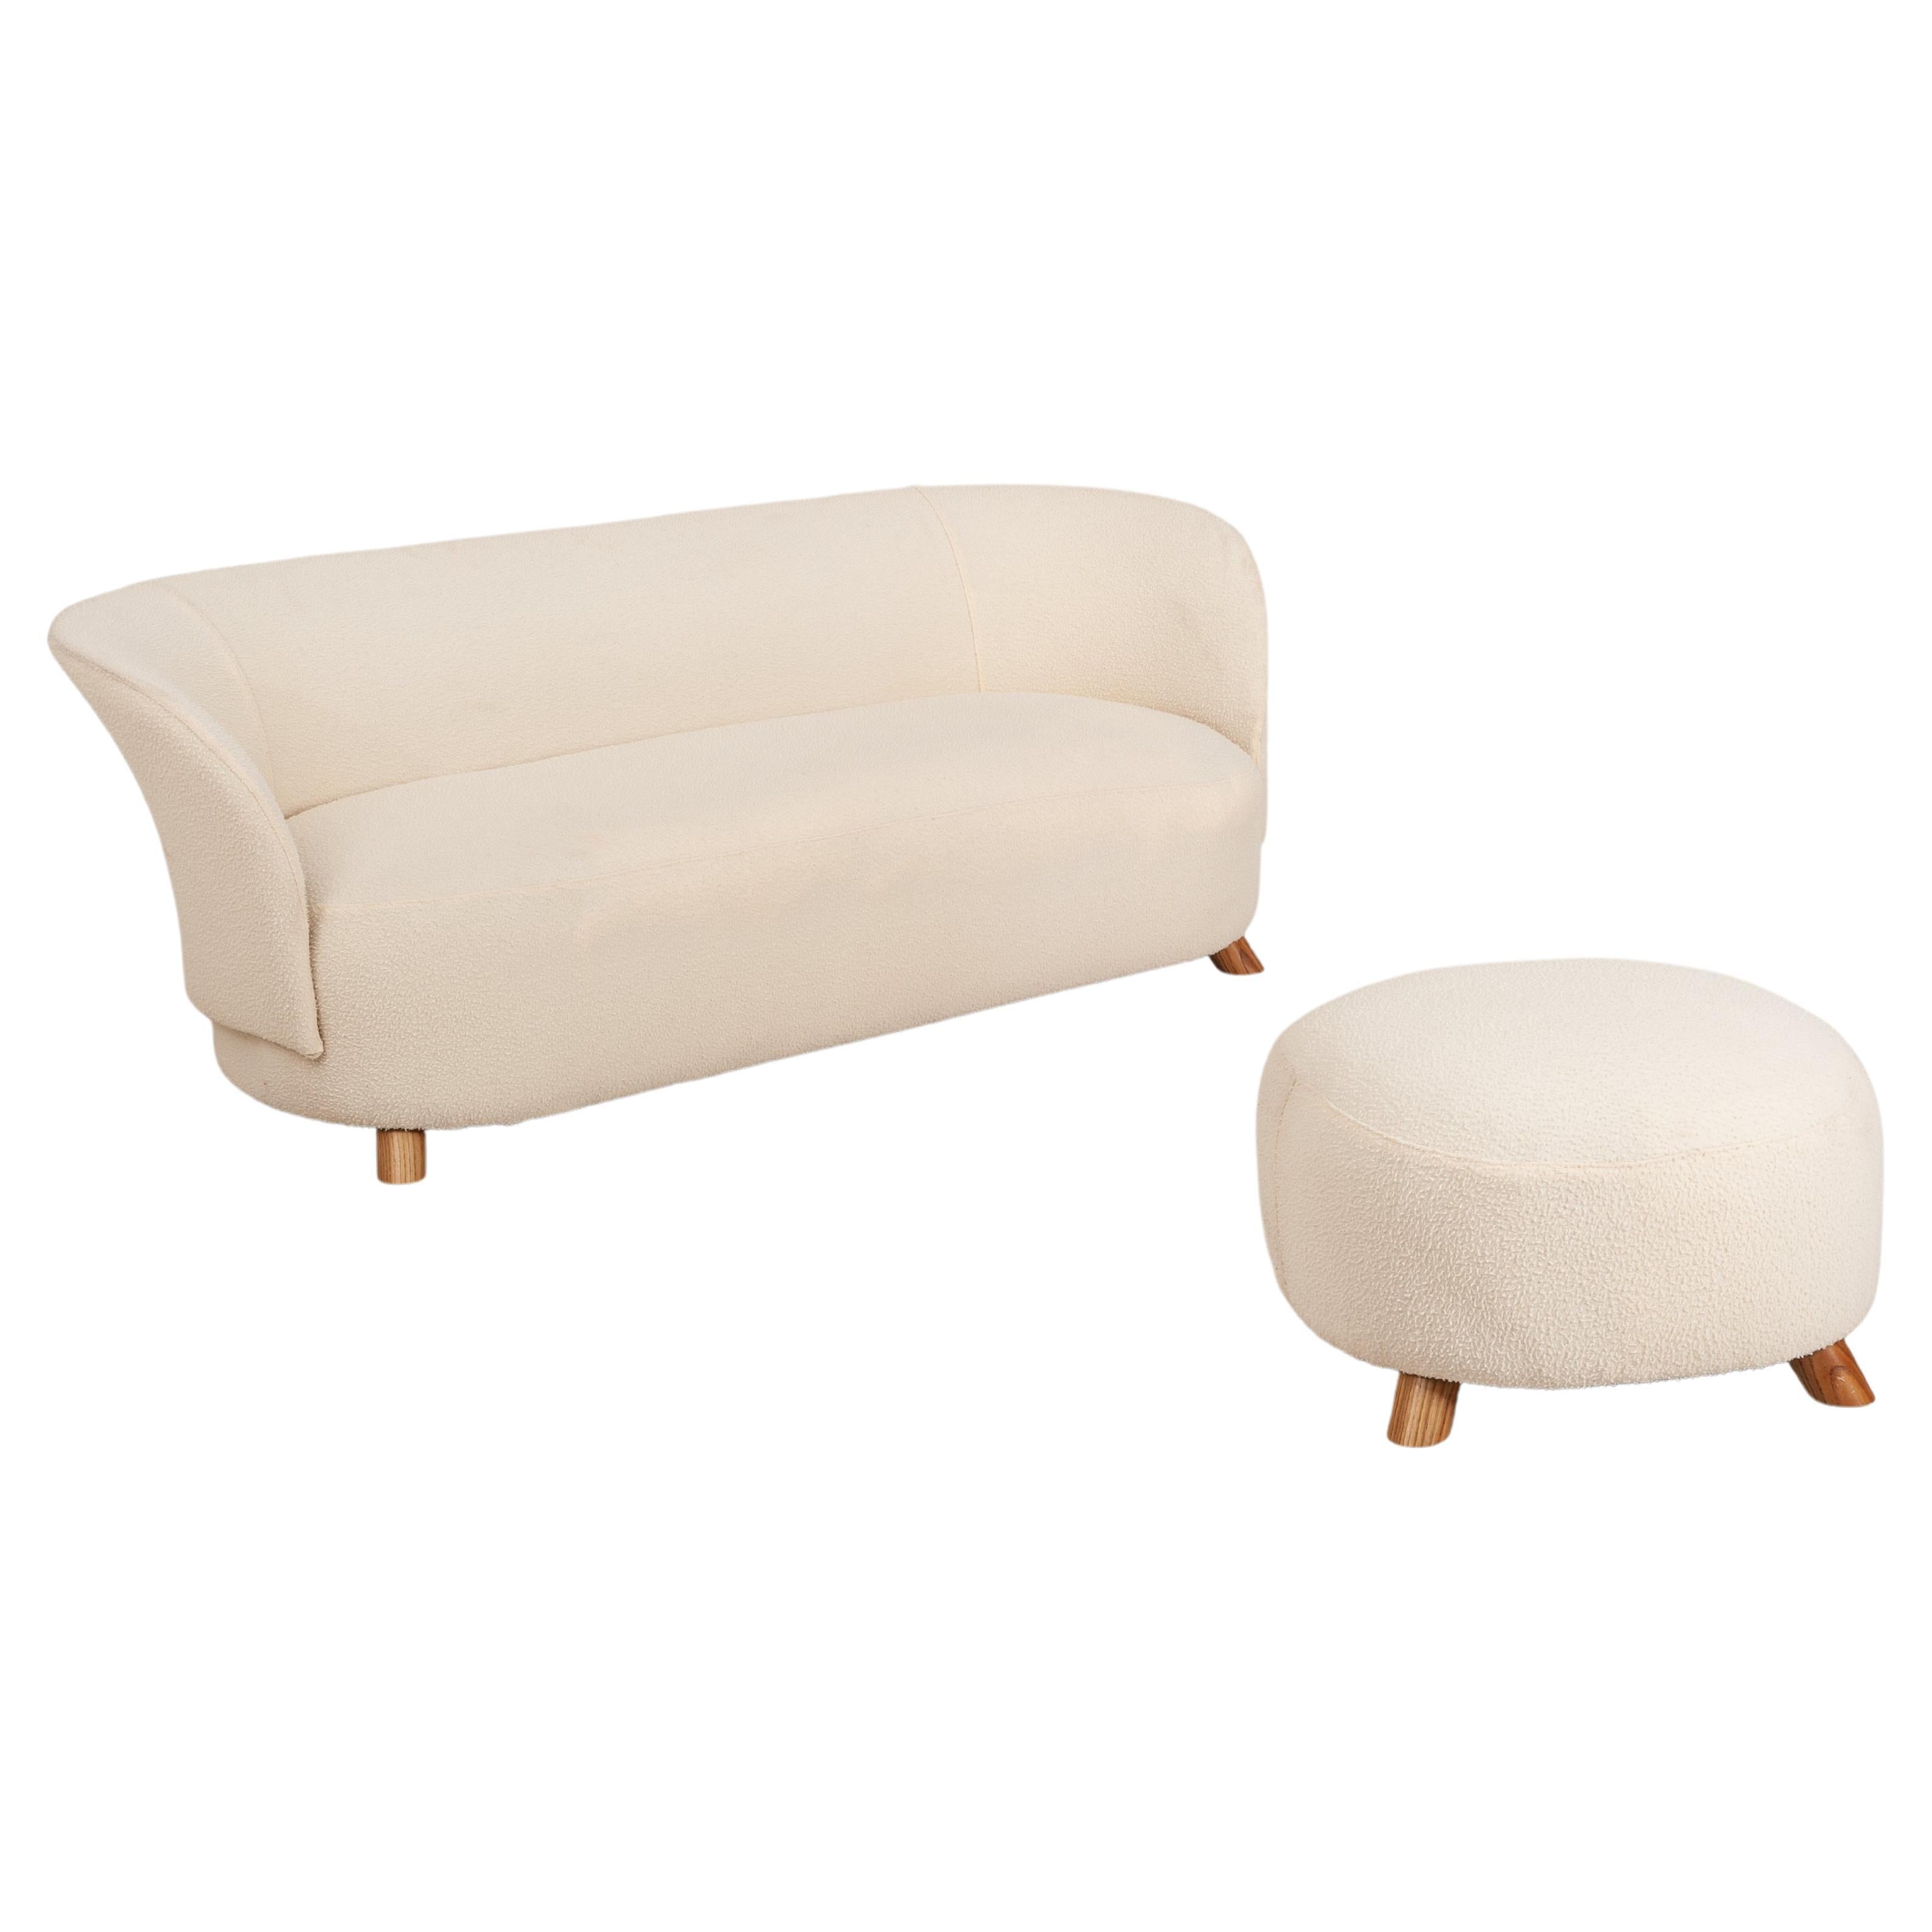 Danish Three Seater Sofa Upholstered in 'Casentino' Tuscan Fabric, Denmark 1940s